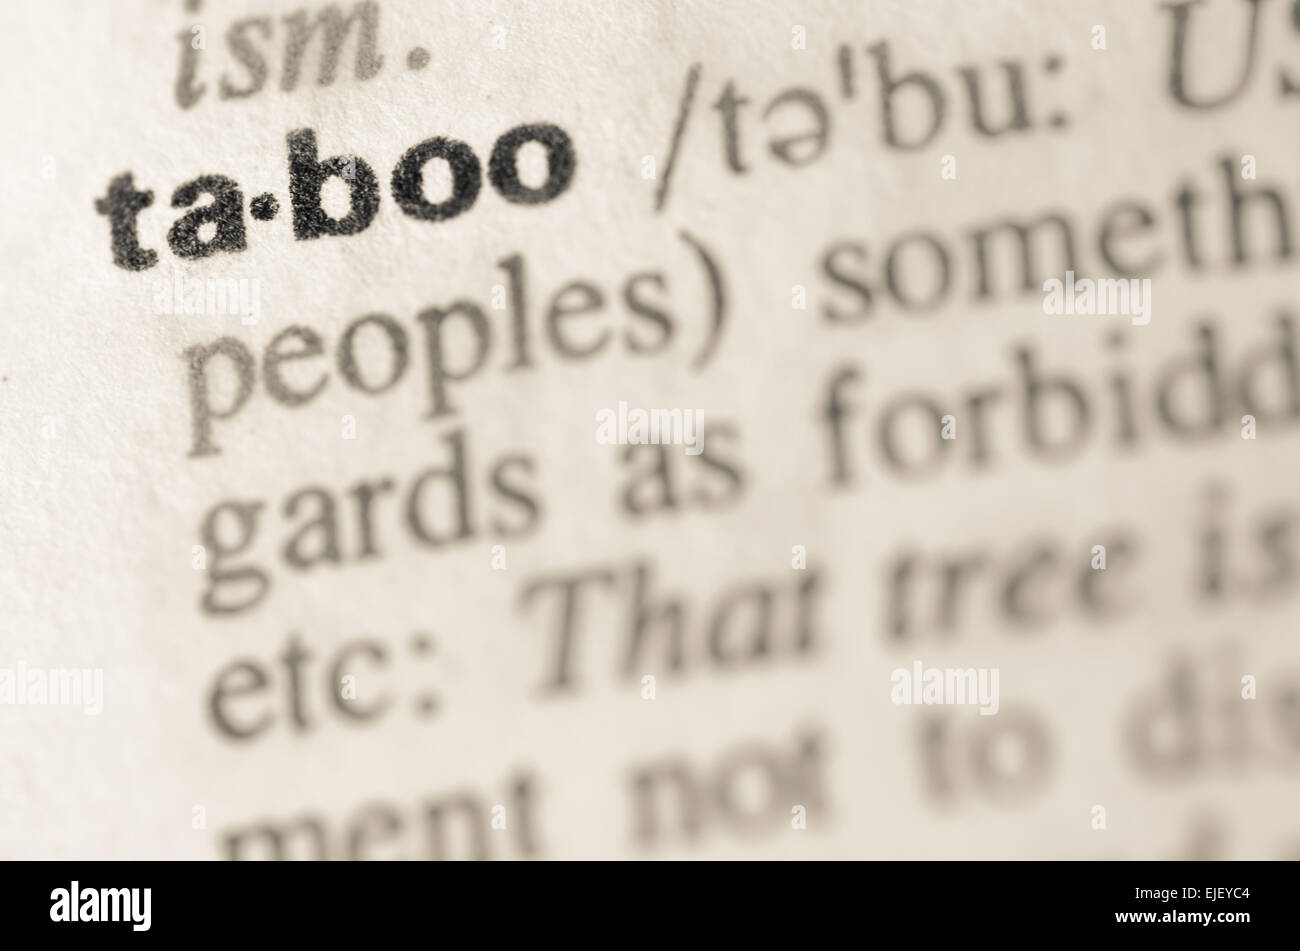 Definición de la palabra tabú en el diccionario. Foto de stock